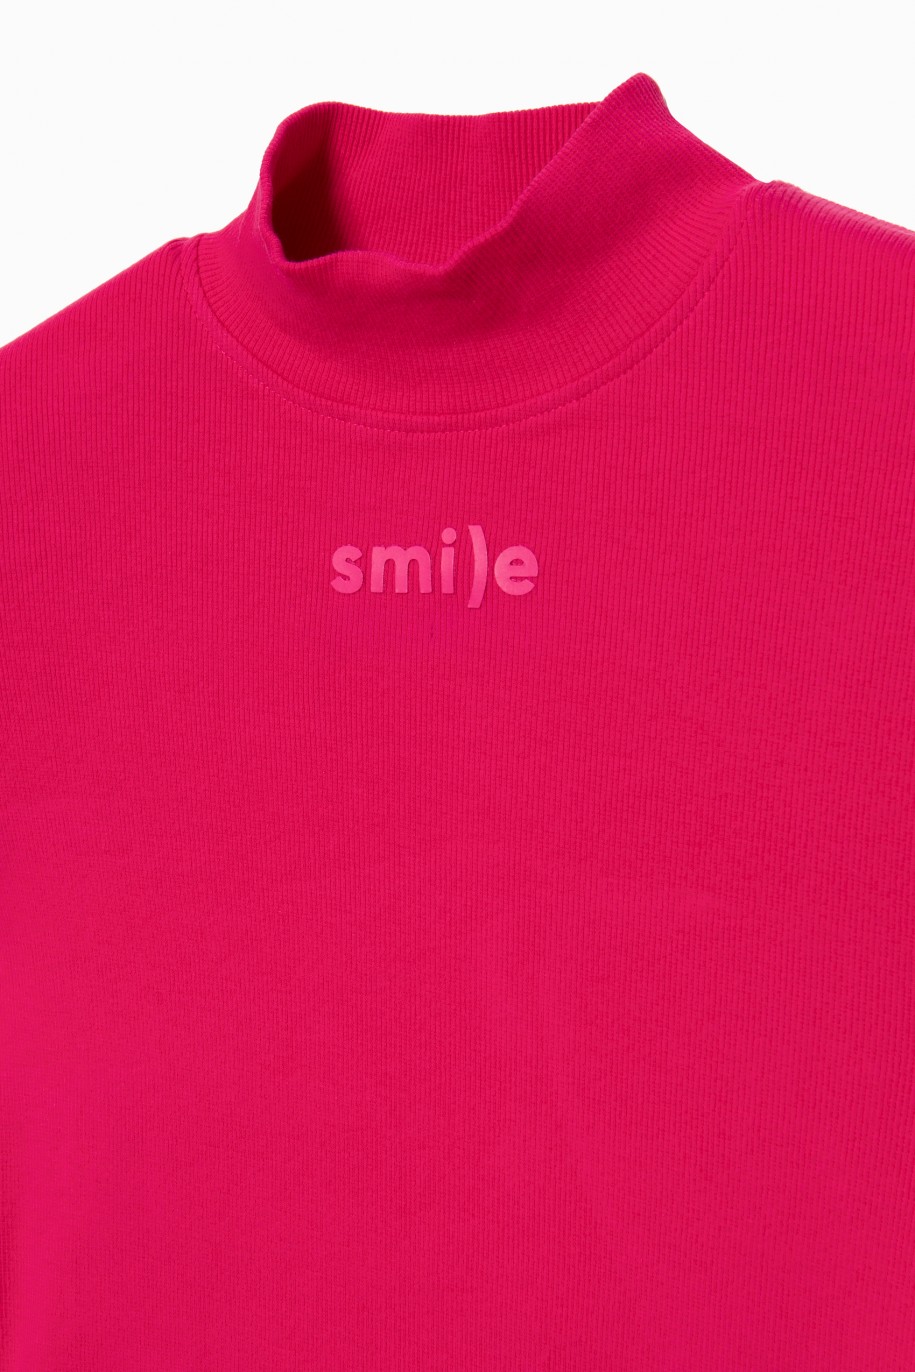 Różowa bluzka z długim rękawem dla dziewczyny SMILE - 31195